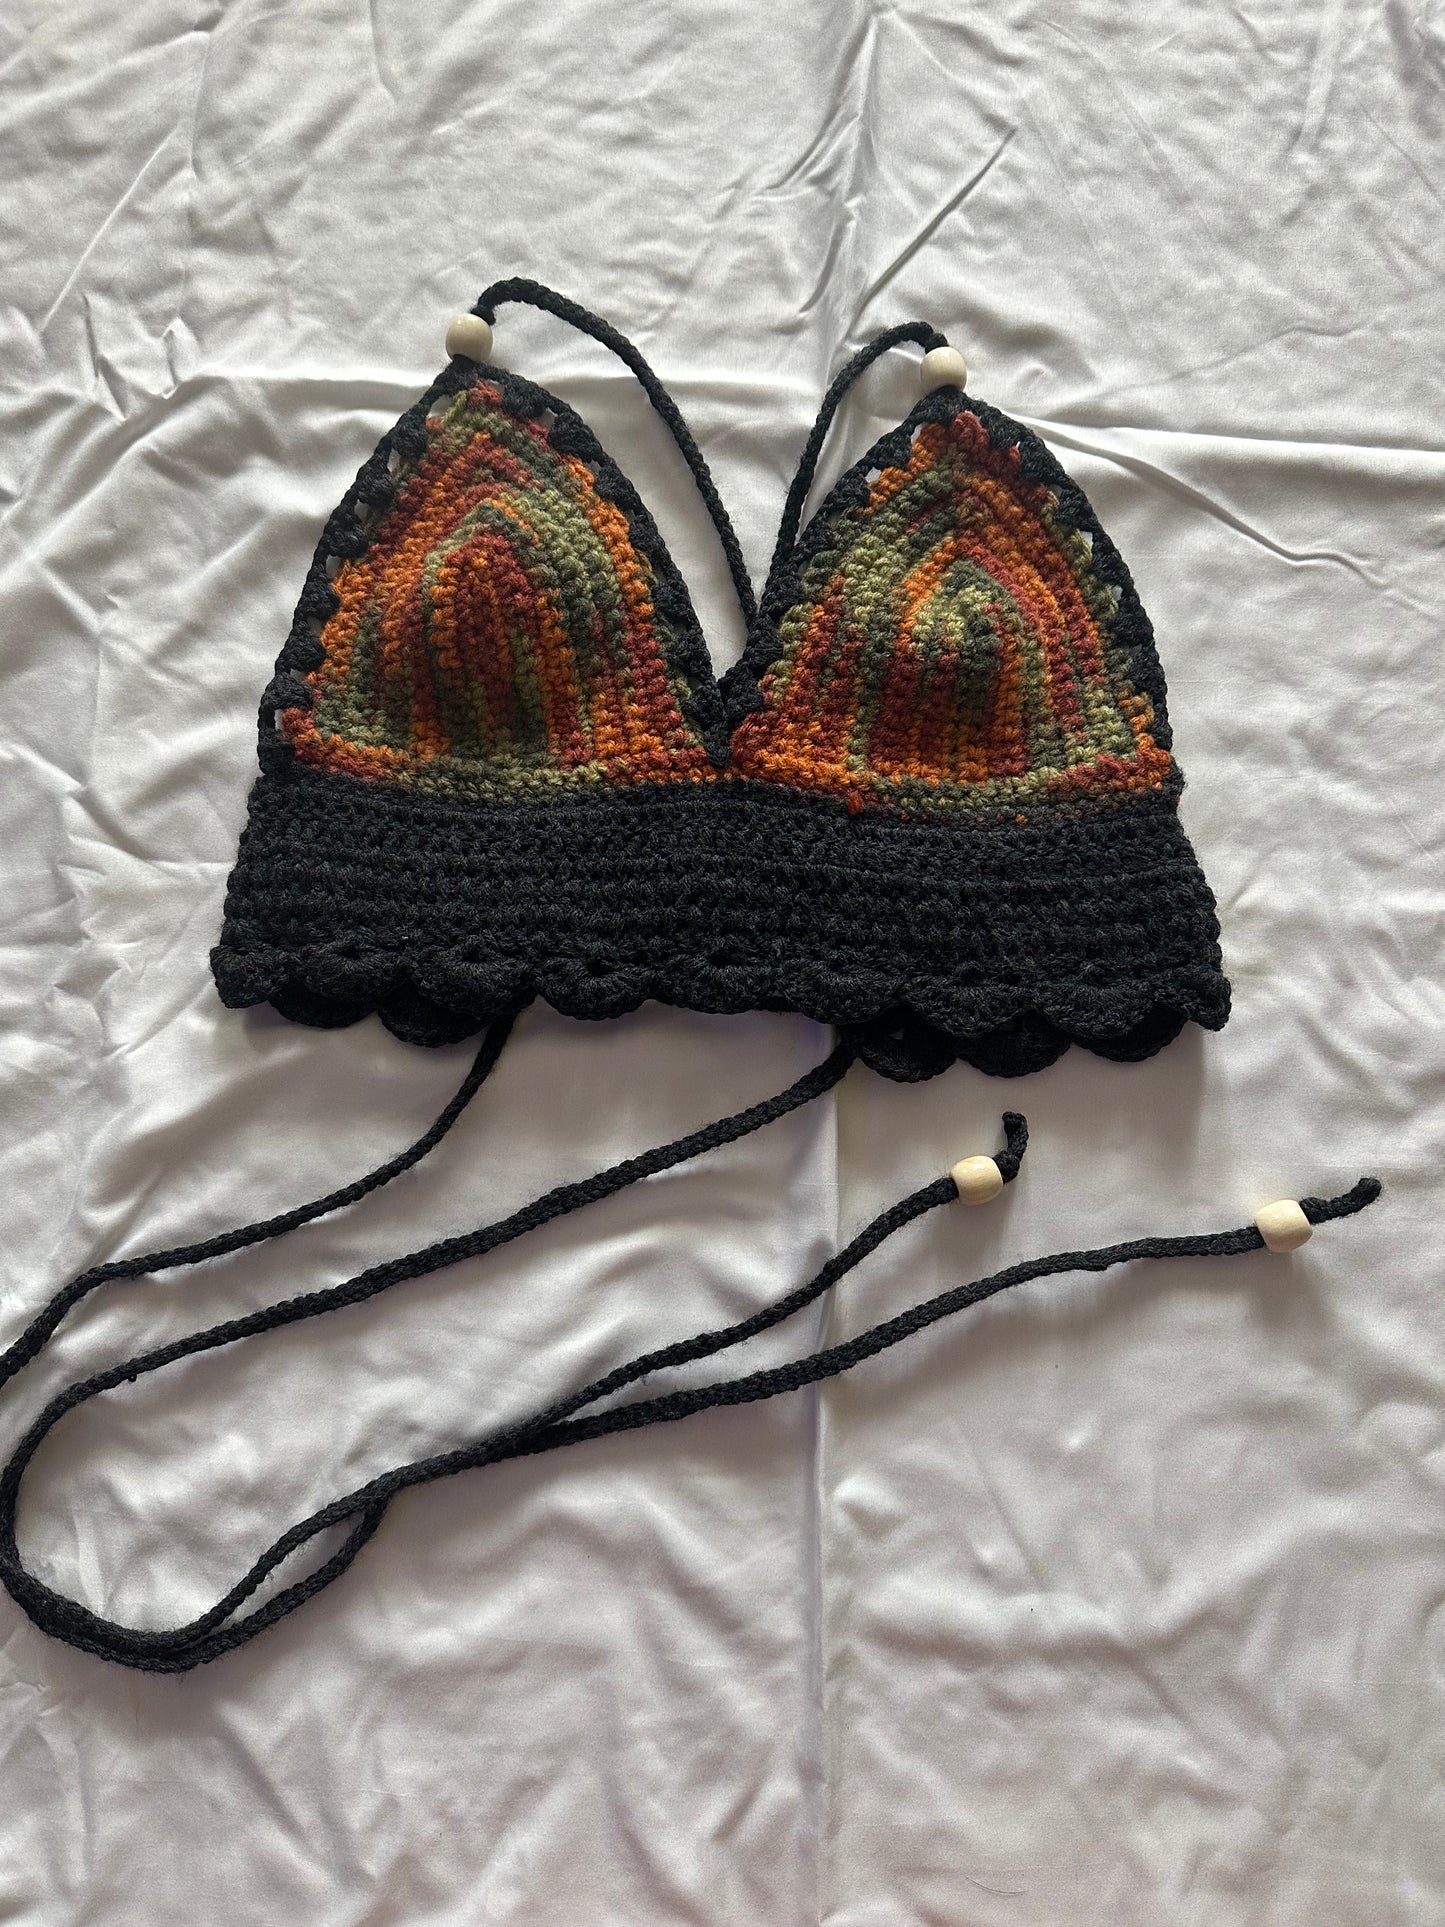 Crochet Crop Top